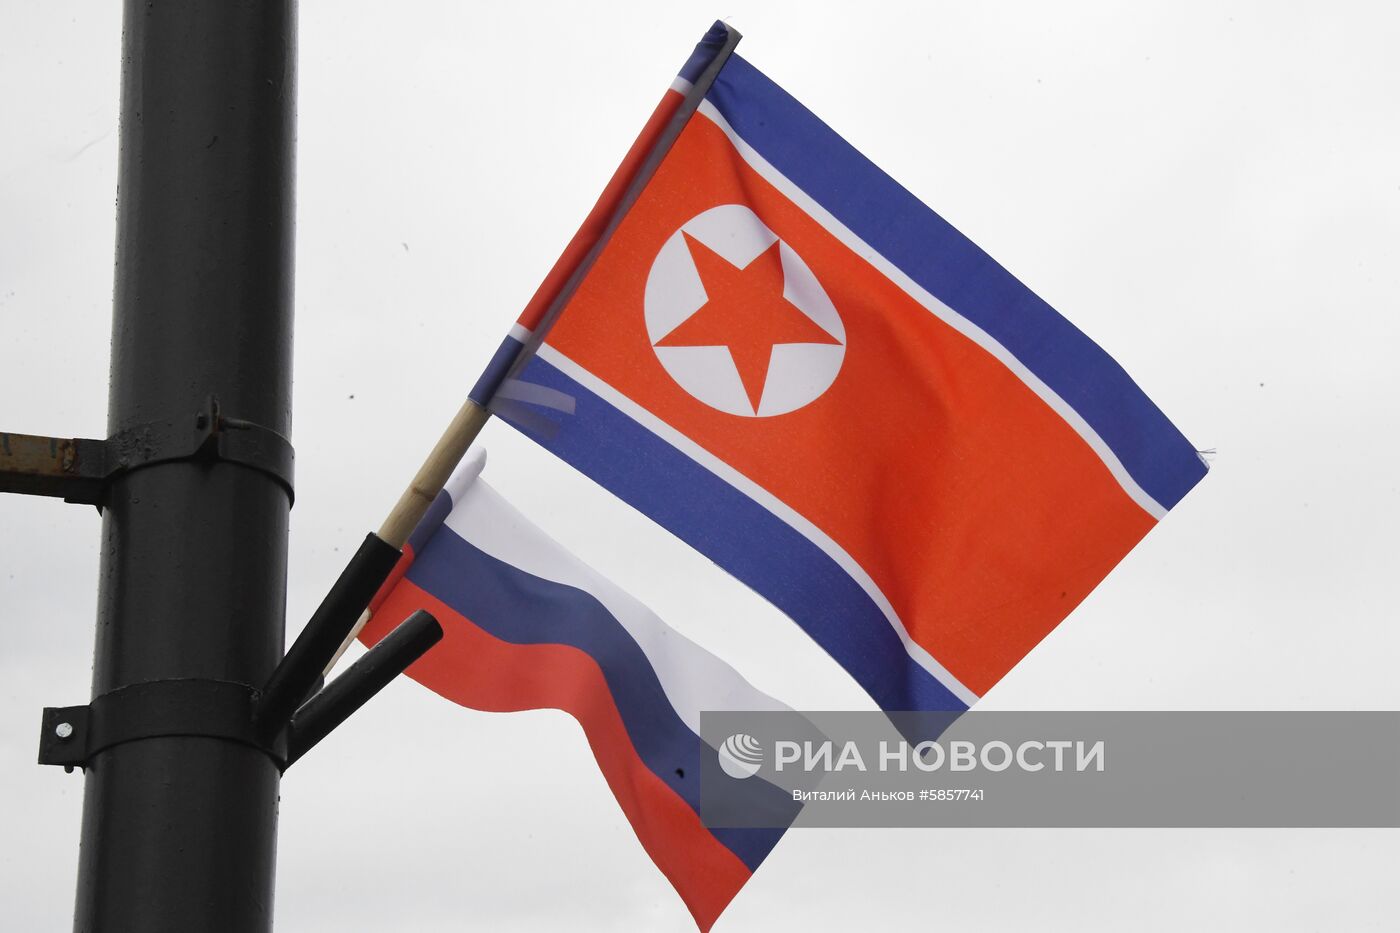 Прибытие северокорейского лидера Ким Чен Ына во Владивосток 